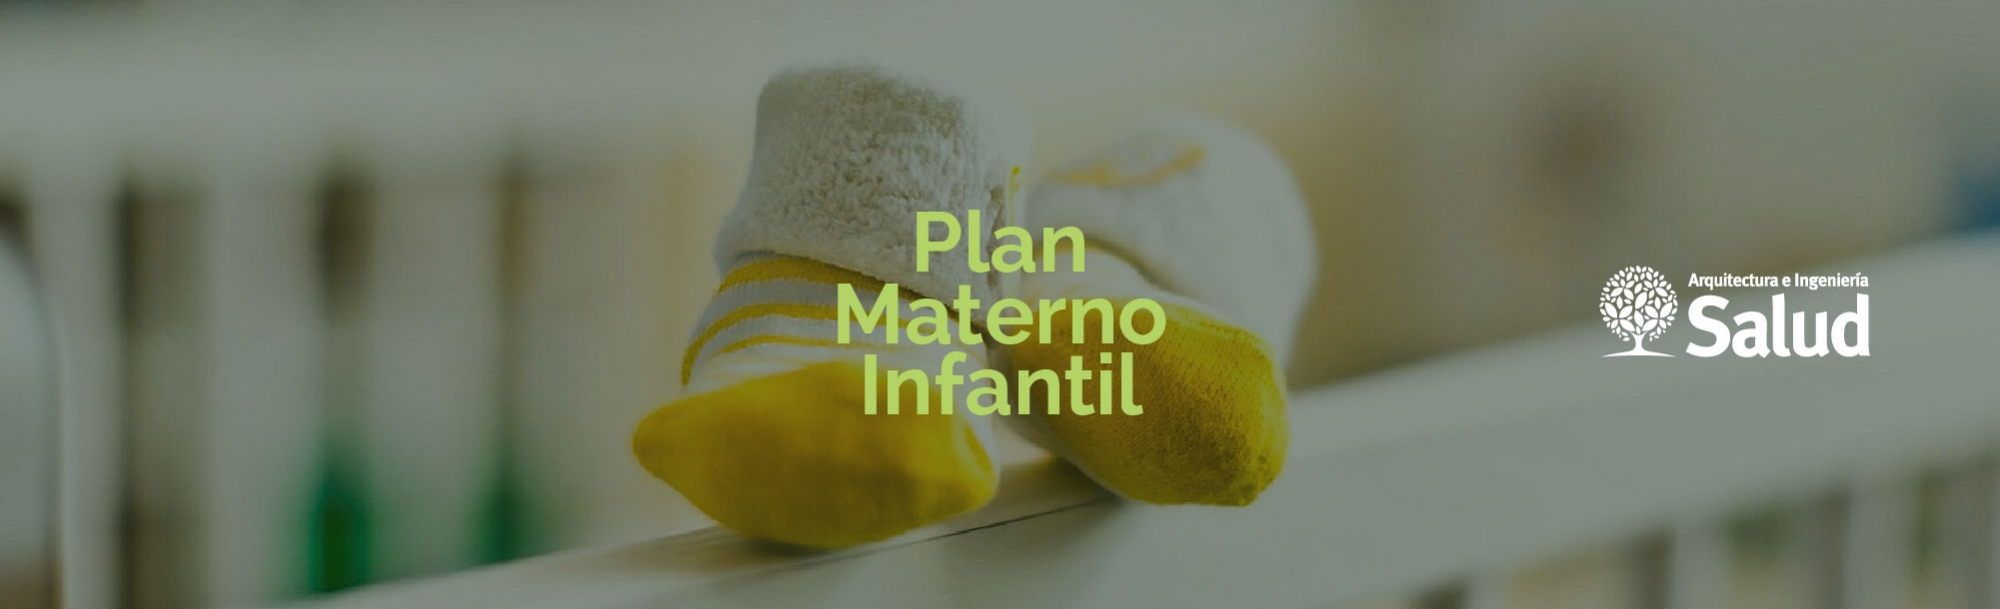 Plan Materno Infantil